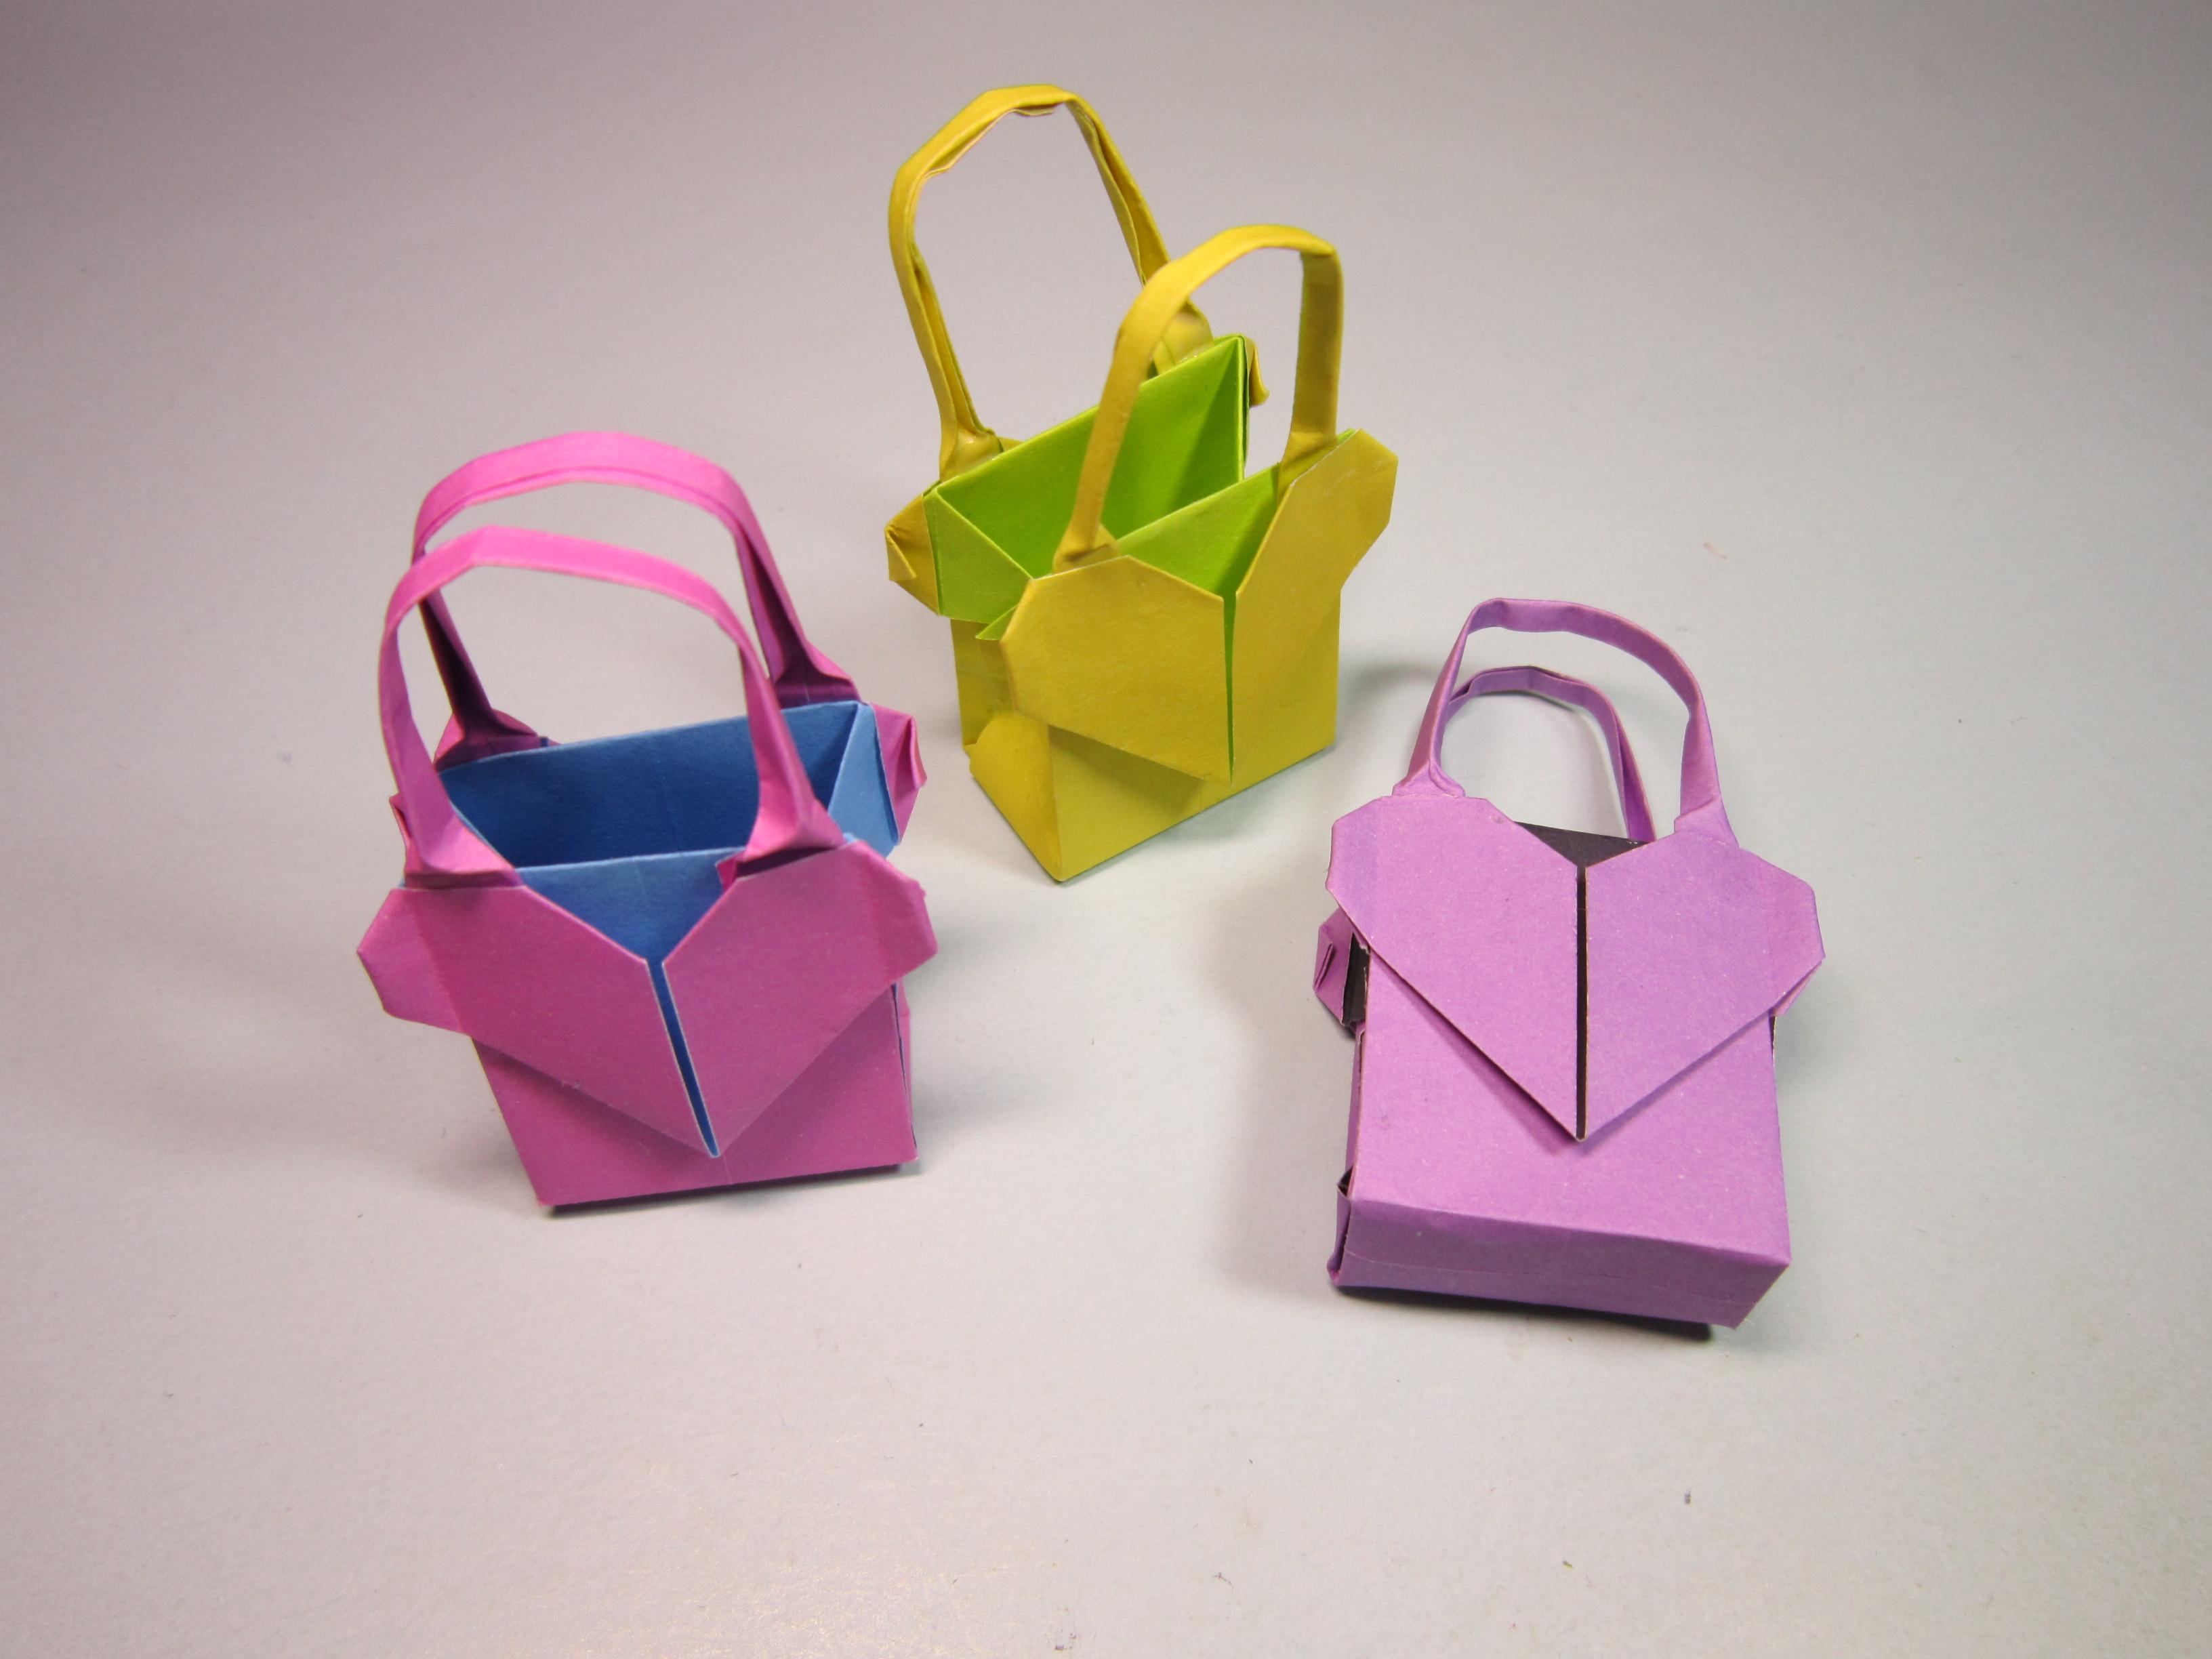 儿童手工折纸包包,简单爱心手提包的折法,diy手工制作